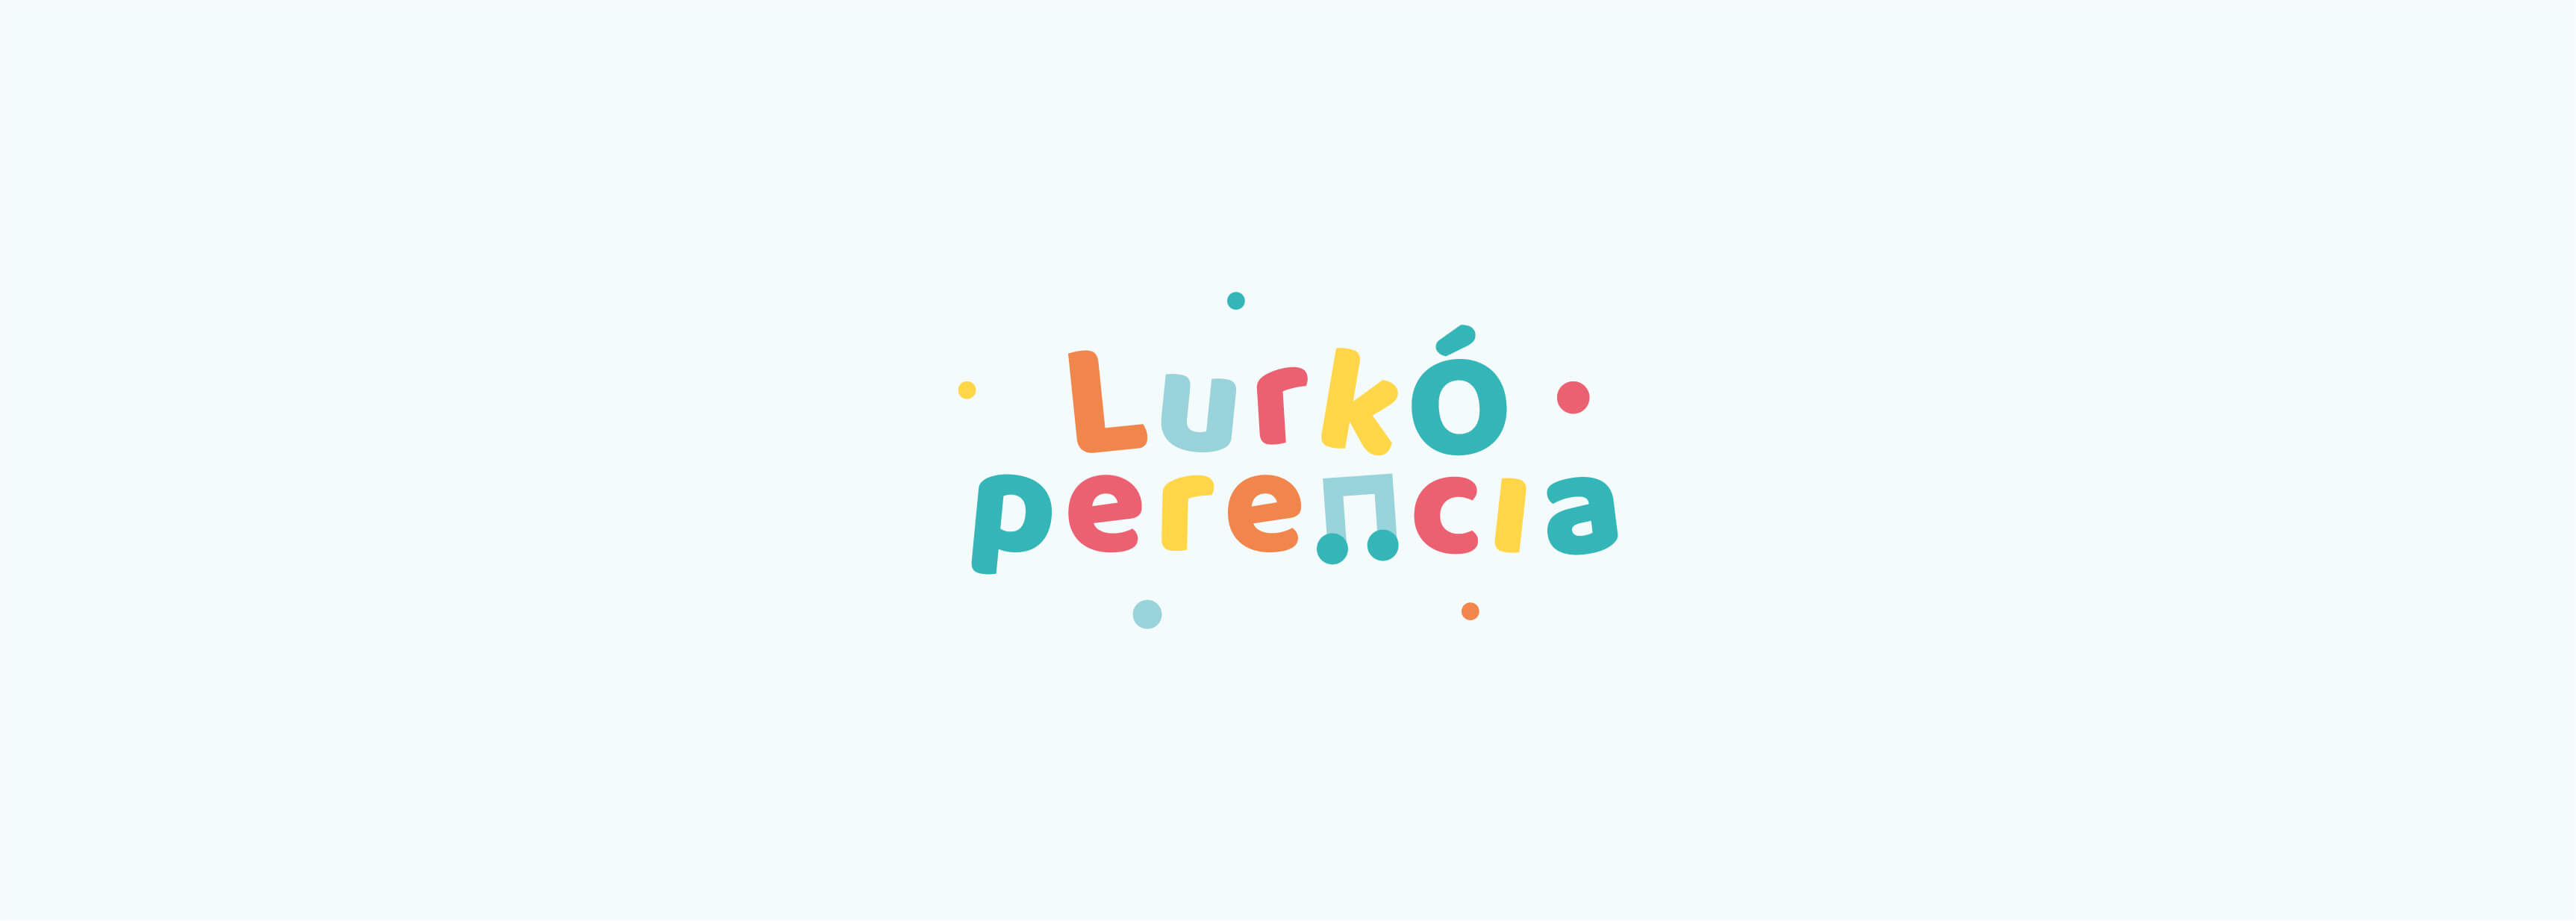 LurkÓperencia - grafikus logó tervezés